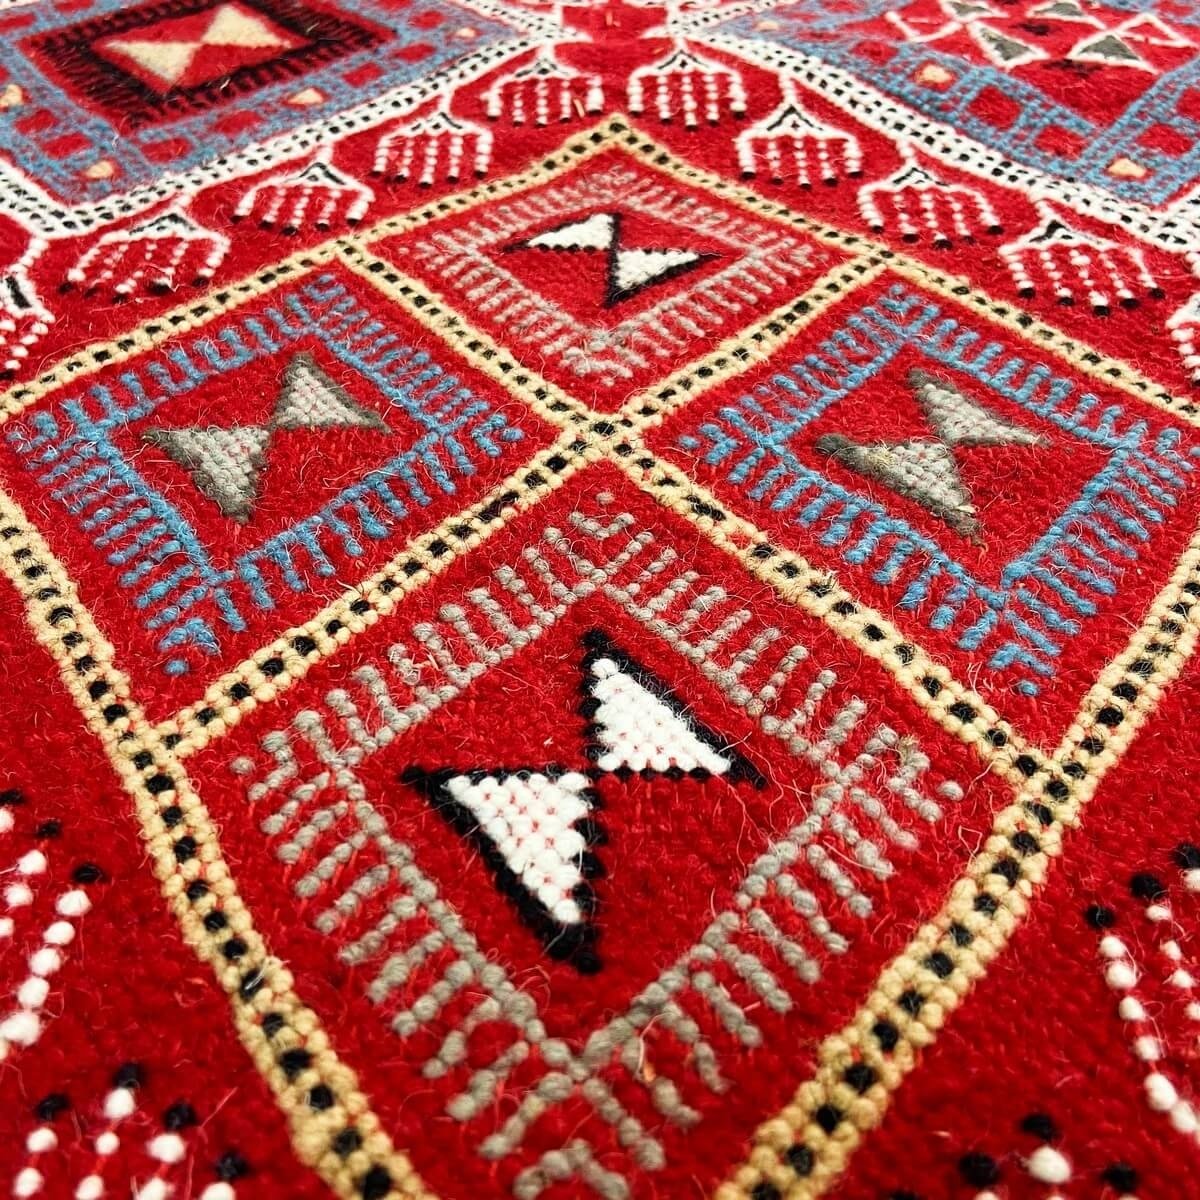 Berber tapijt Tapijt Margoum Ayoun 126x208 Rood (Handgeweven, Wol, Tunesië) Tunesisch Margoum Tapijt uit de stad Kairouan. Recht